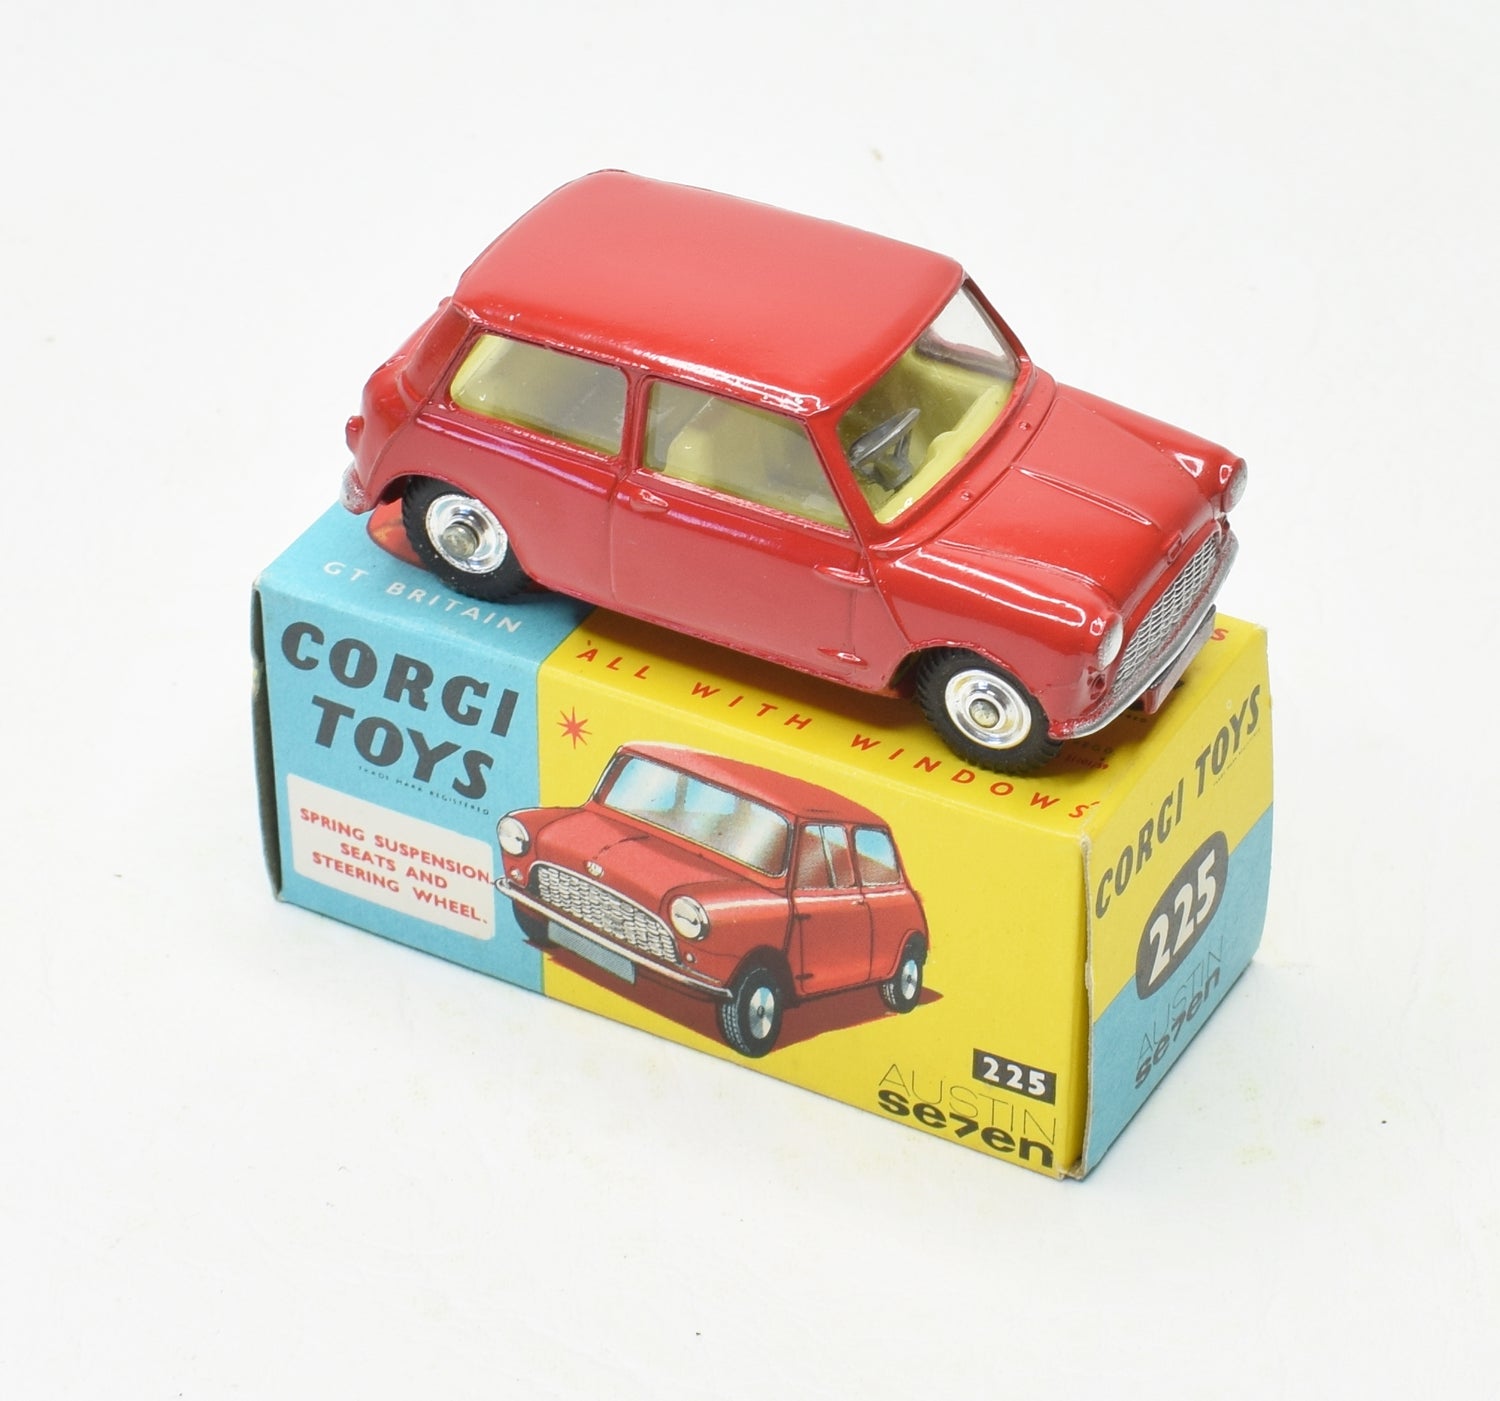 Corgi toys 225 Austin 7 Virtually Mint/Boxed (New The 'Geneva' Collection) 1 of 2